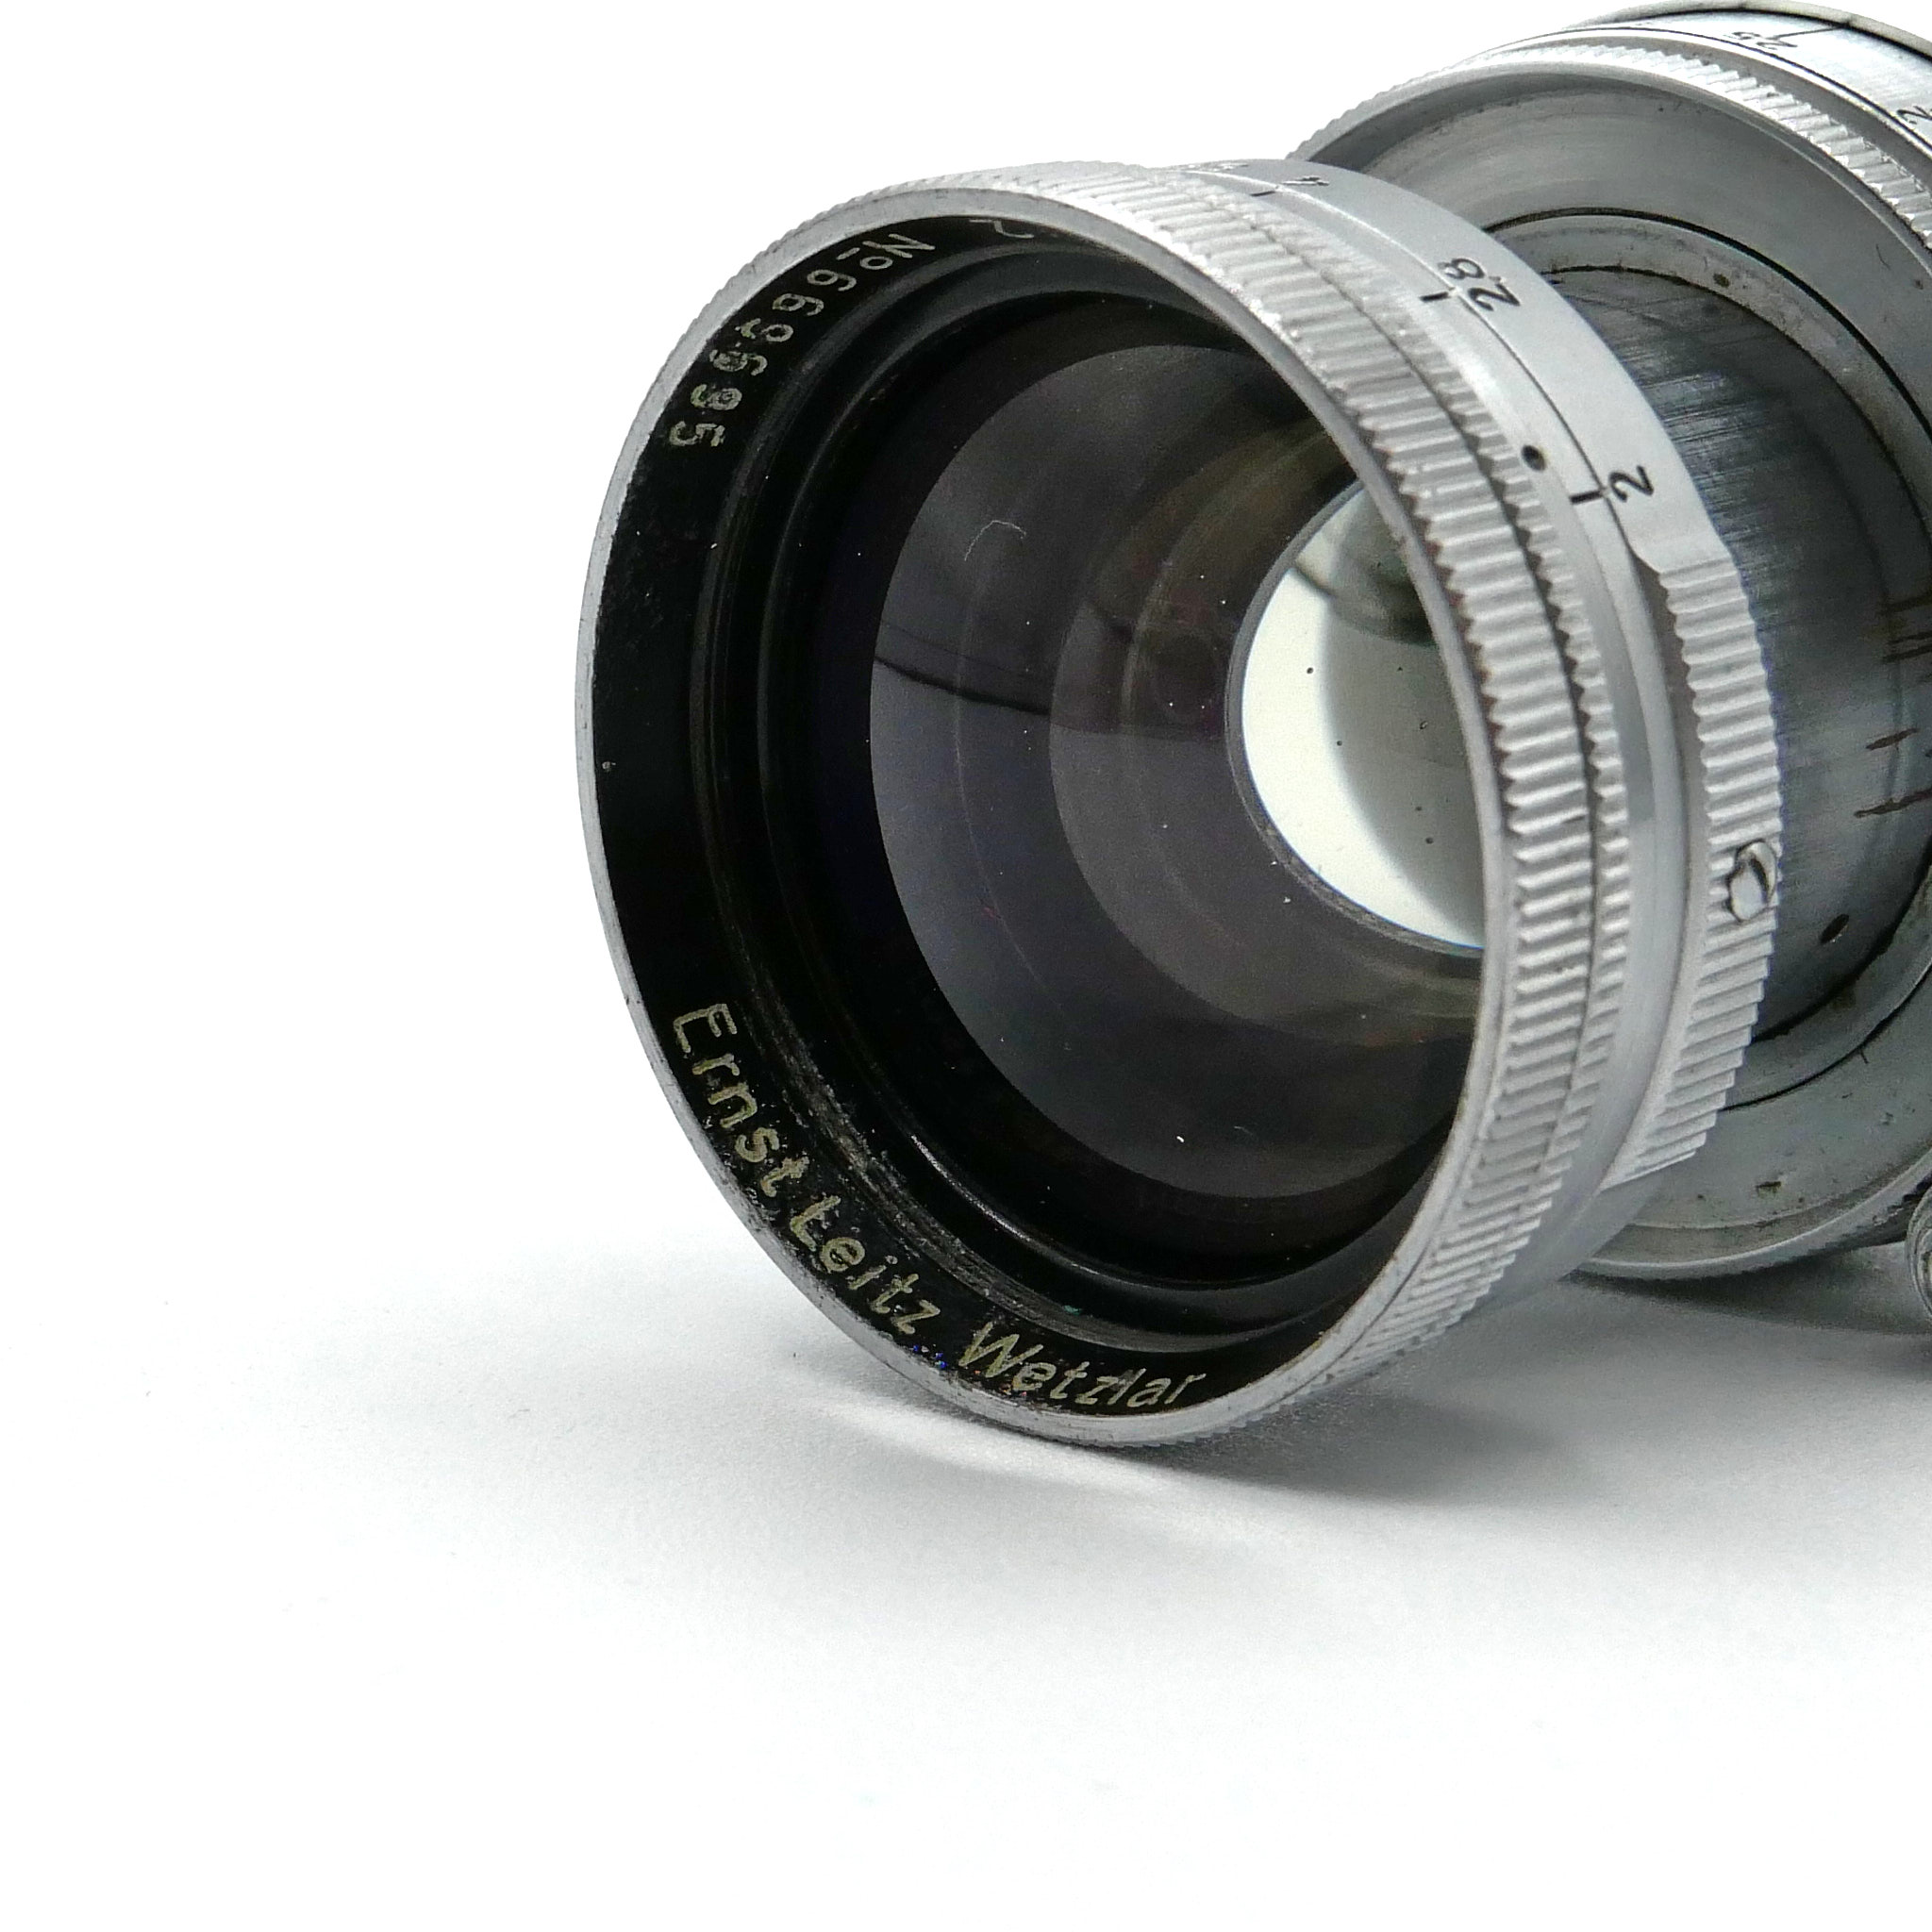 Leica III silver + Summitar 50mm F/2